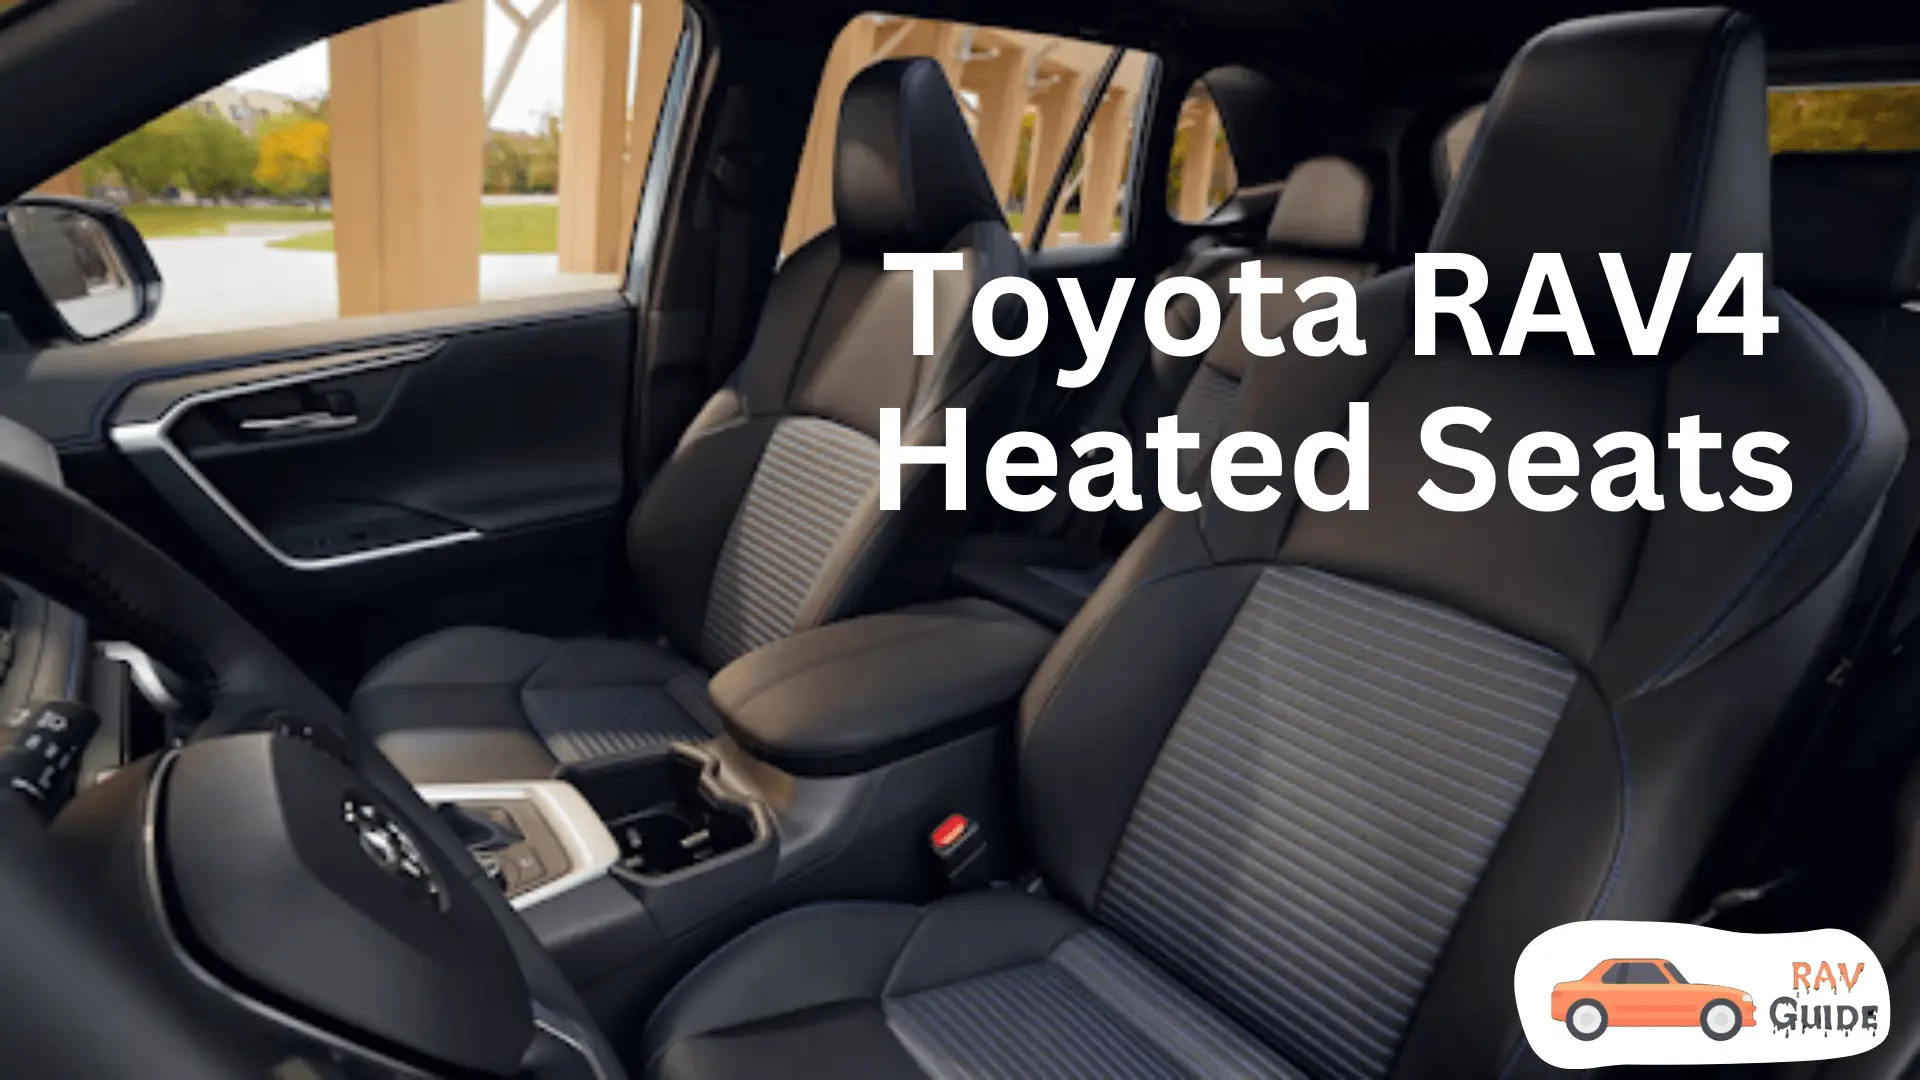 Toyota RAV4 Heated Seats